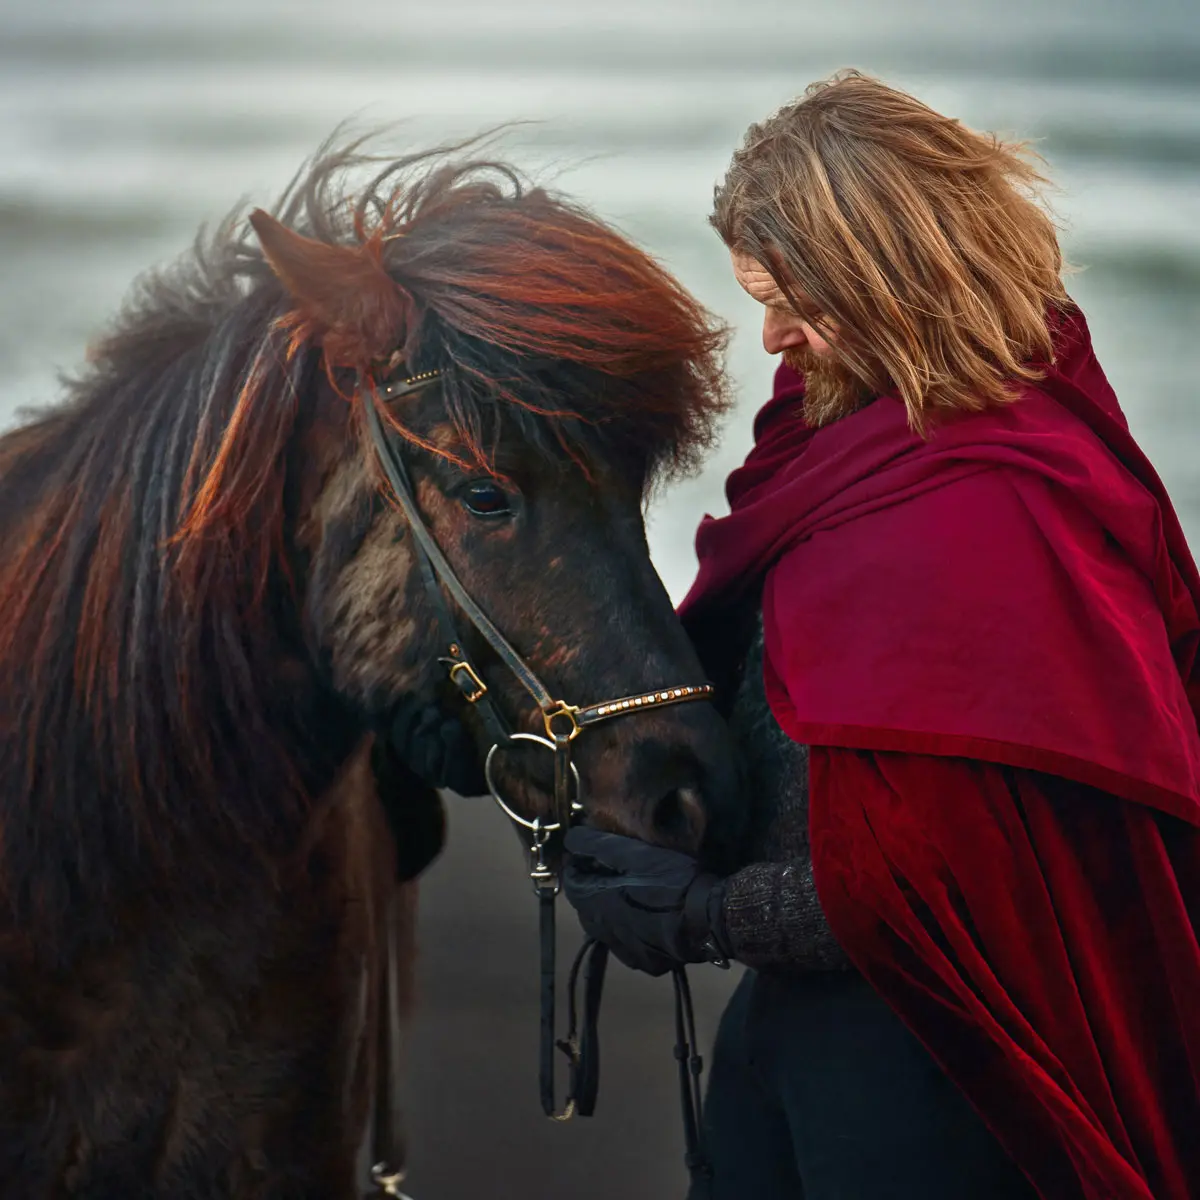 Hordur Bender is the Icelandic horse whisperer